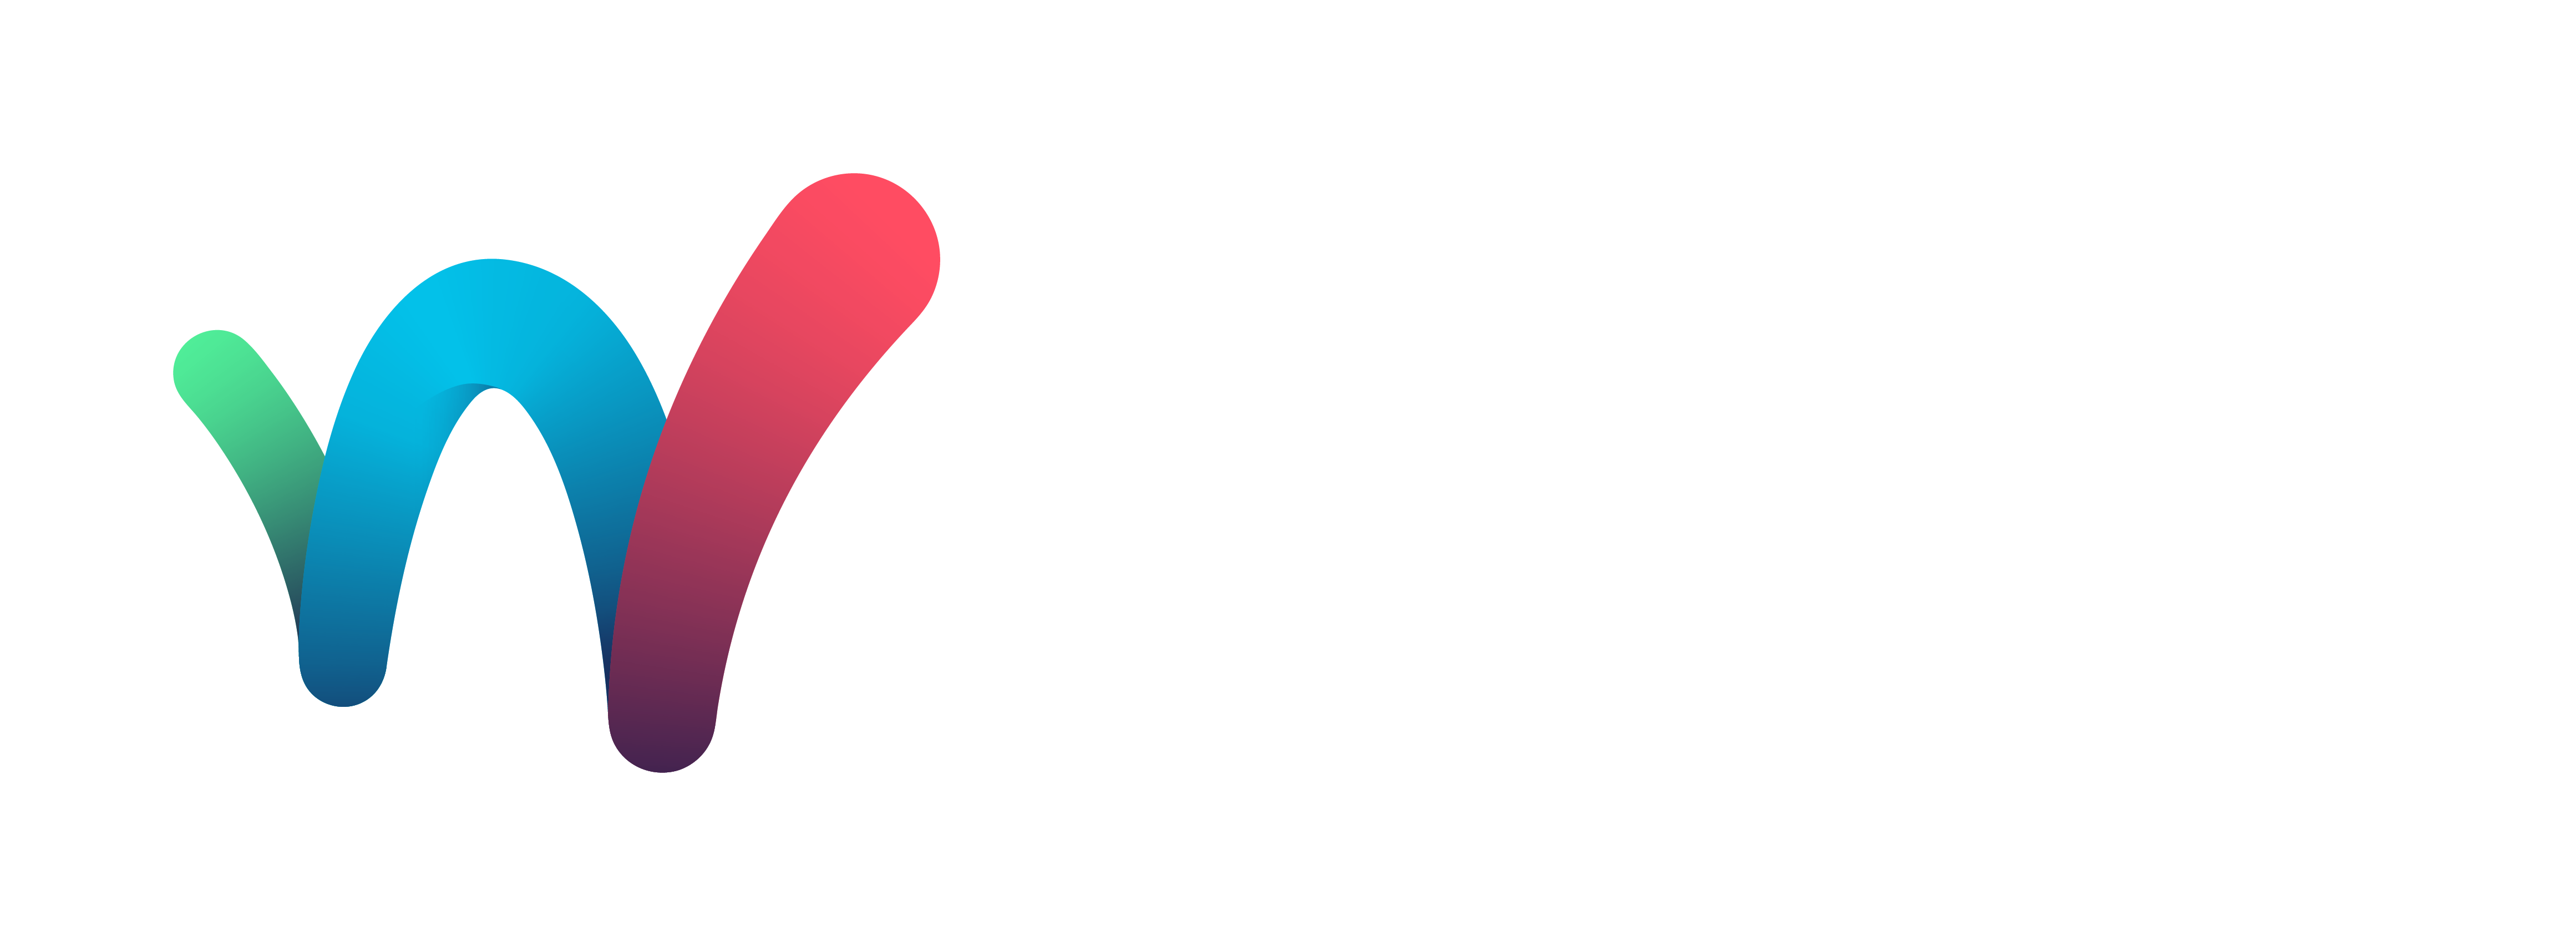 world tennis tour kalmar